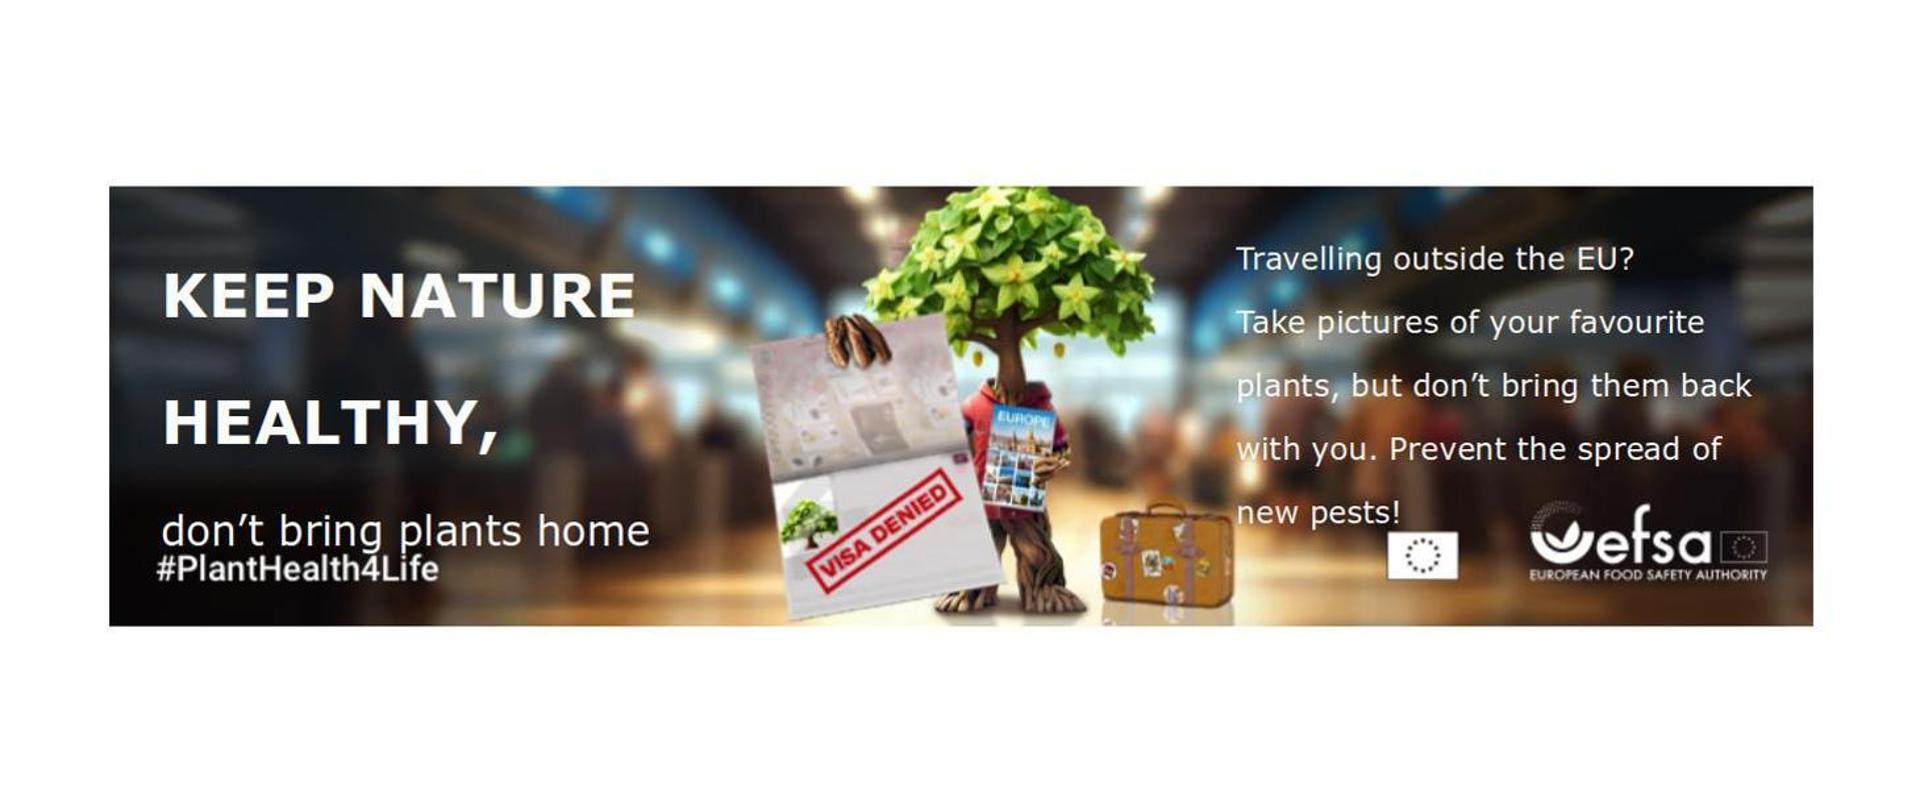 figura drzewa trzymająca kartkę z napisem visa denied i folder z biura podróży obok którego stoi walizka. 